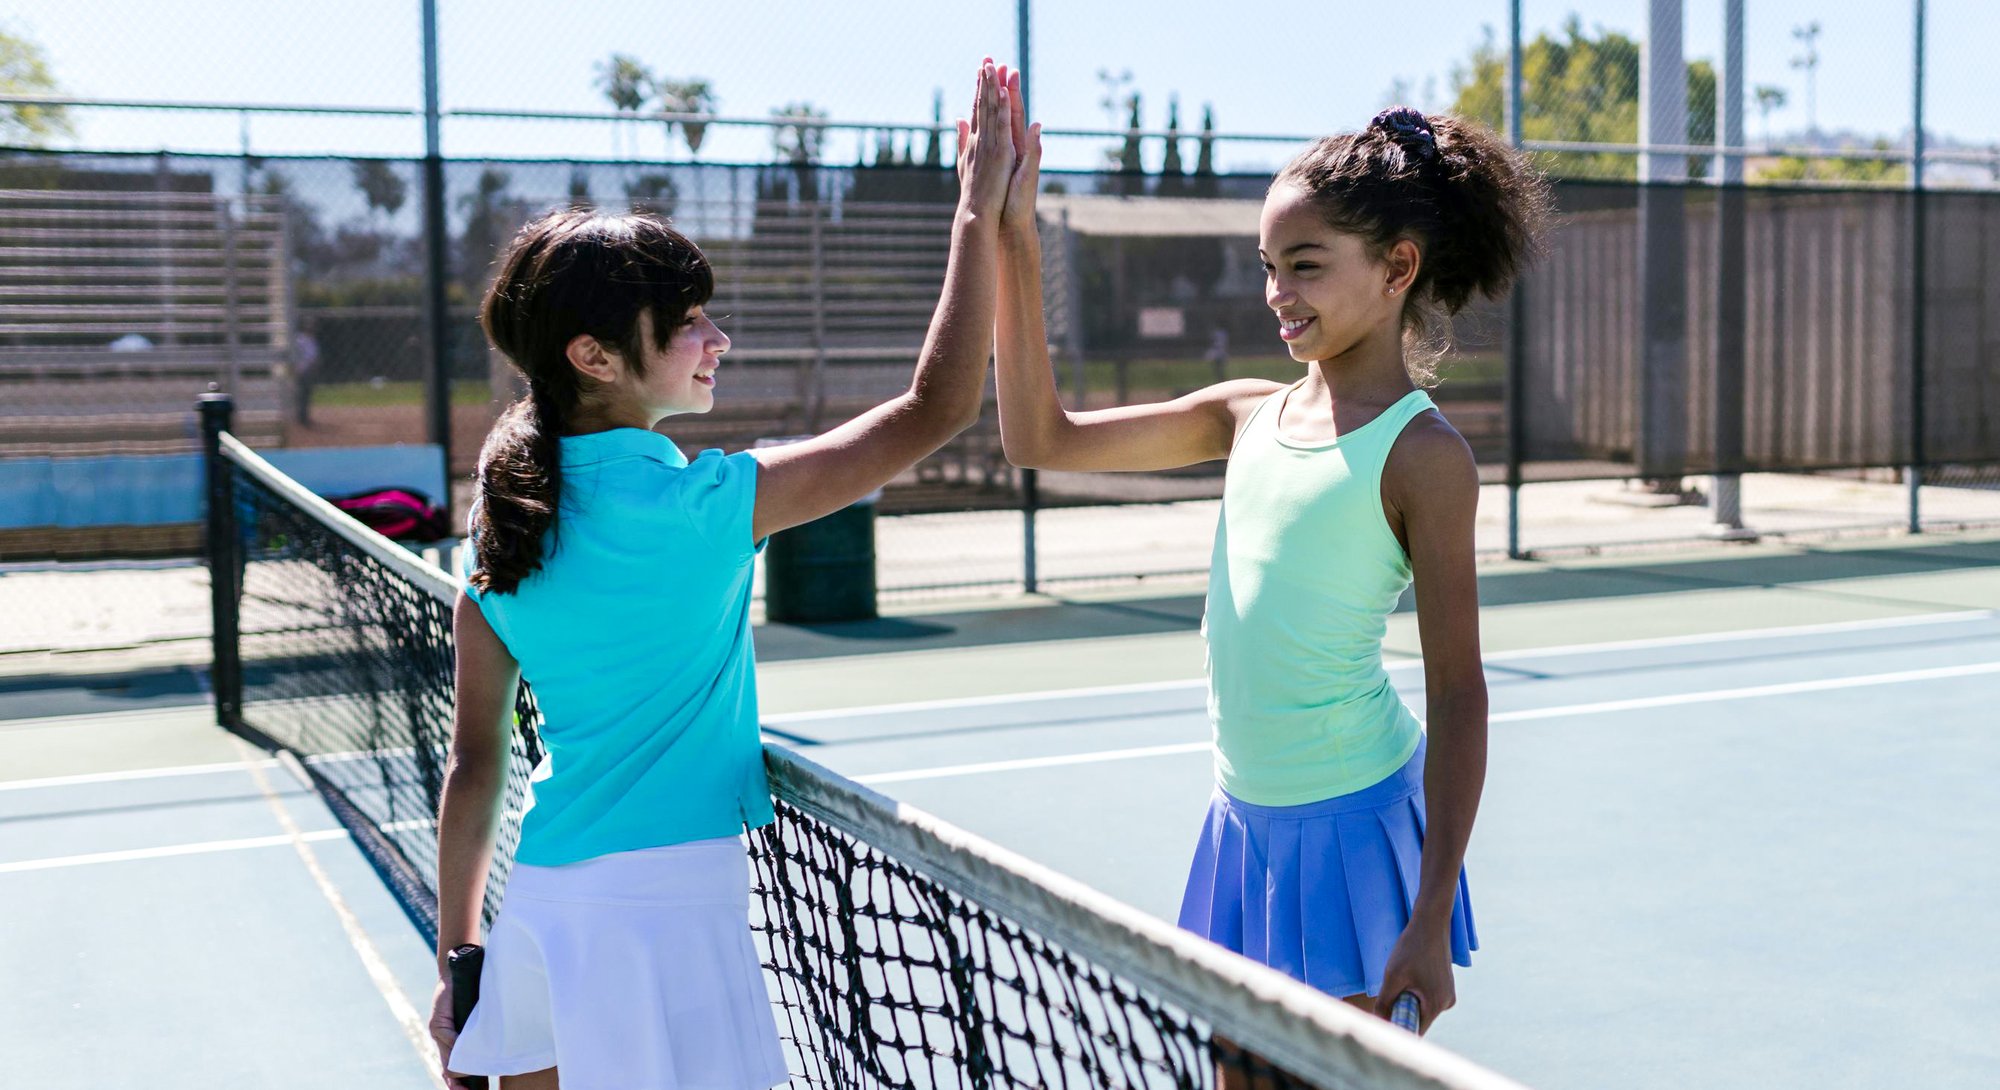 2-girls-playing-tenis